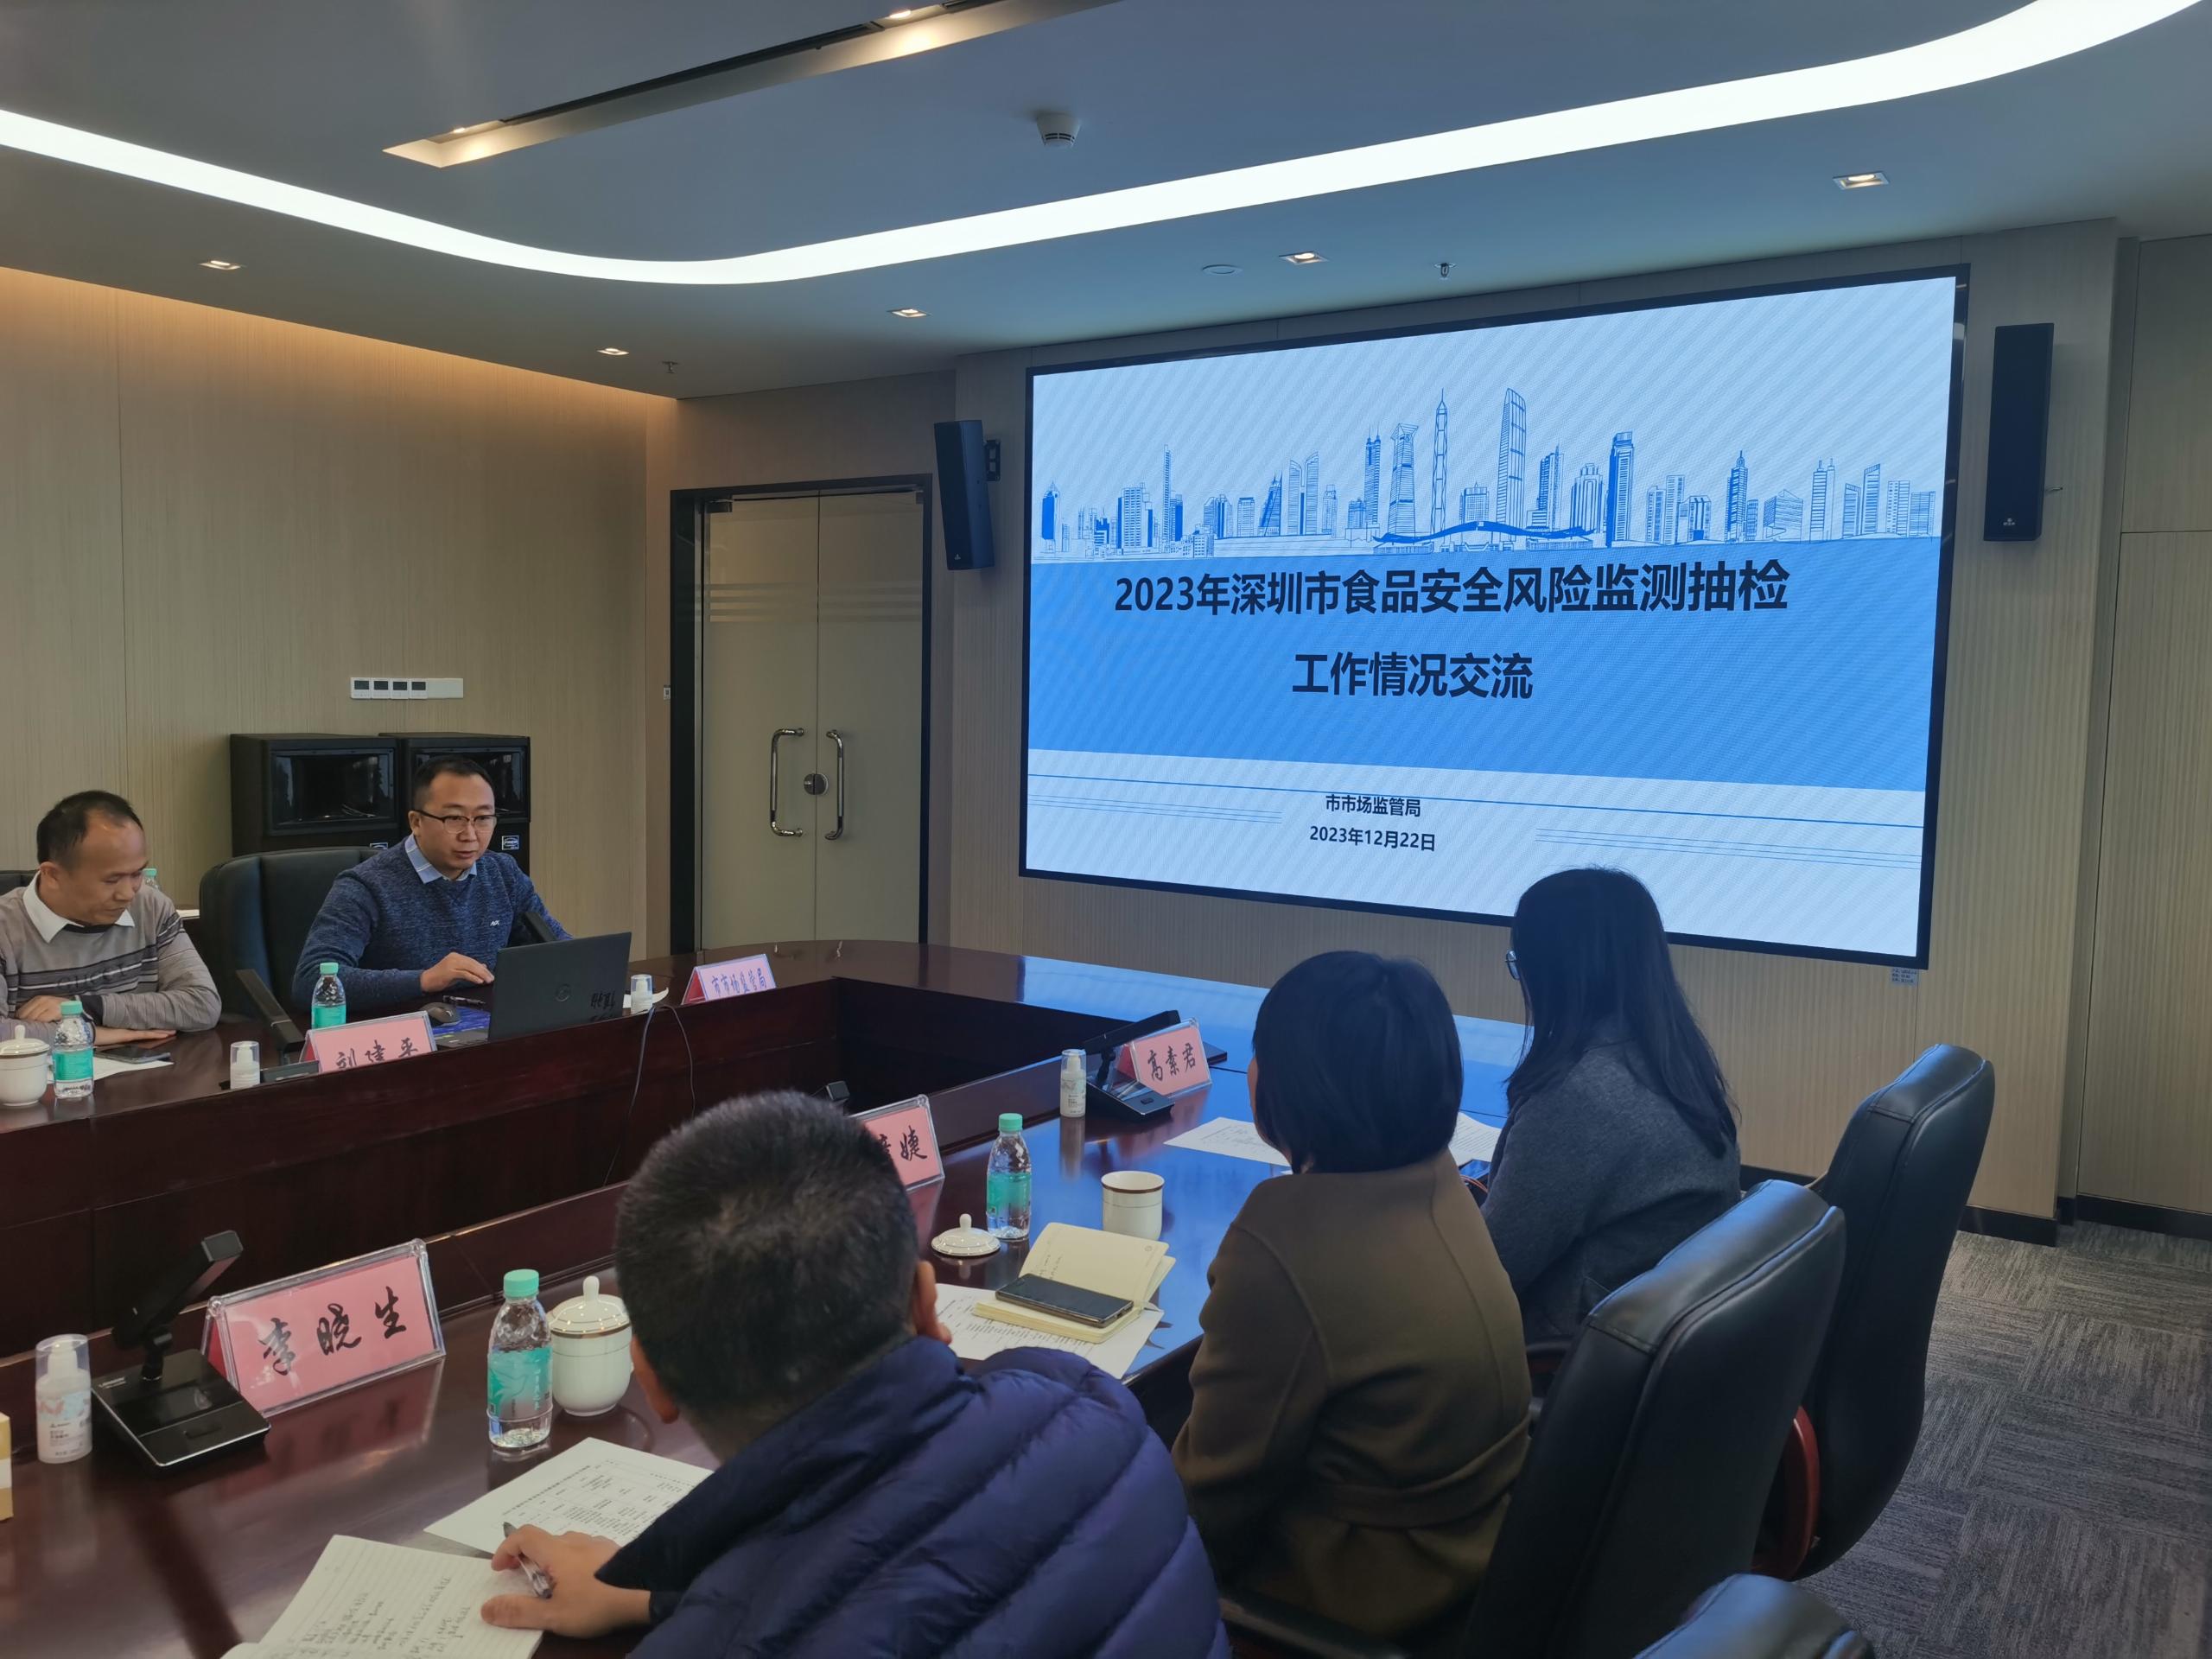 2市疾控中心承办2023年深圳市食品安全风险监测与评估工作研讨会.jpg